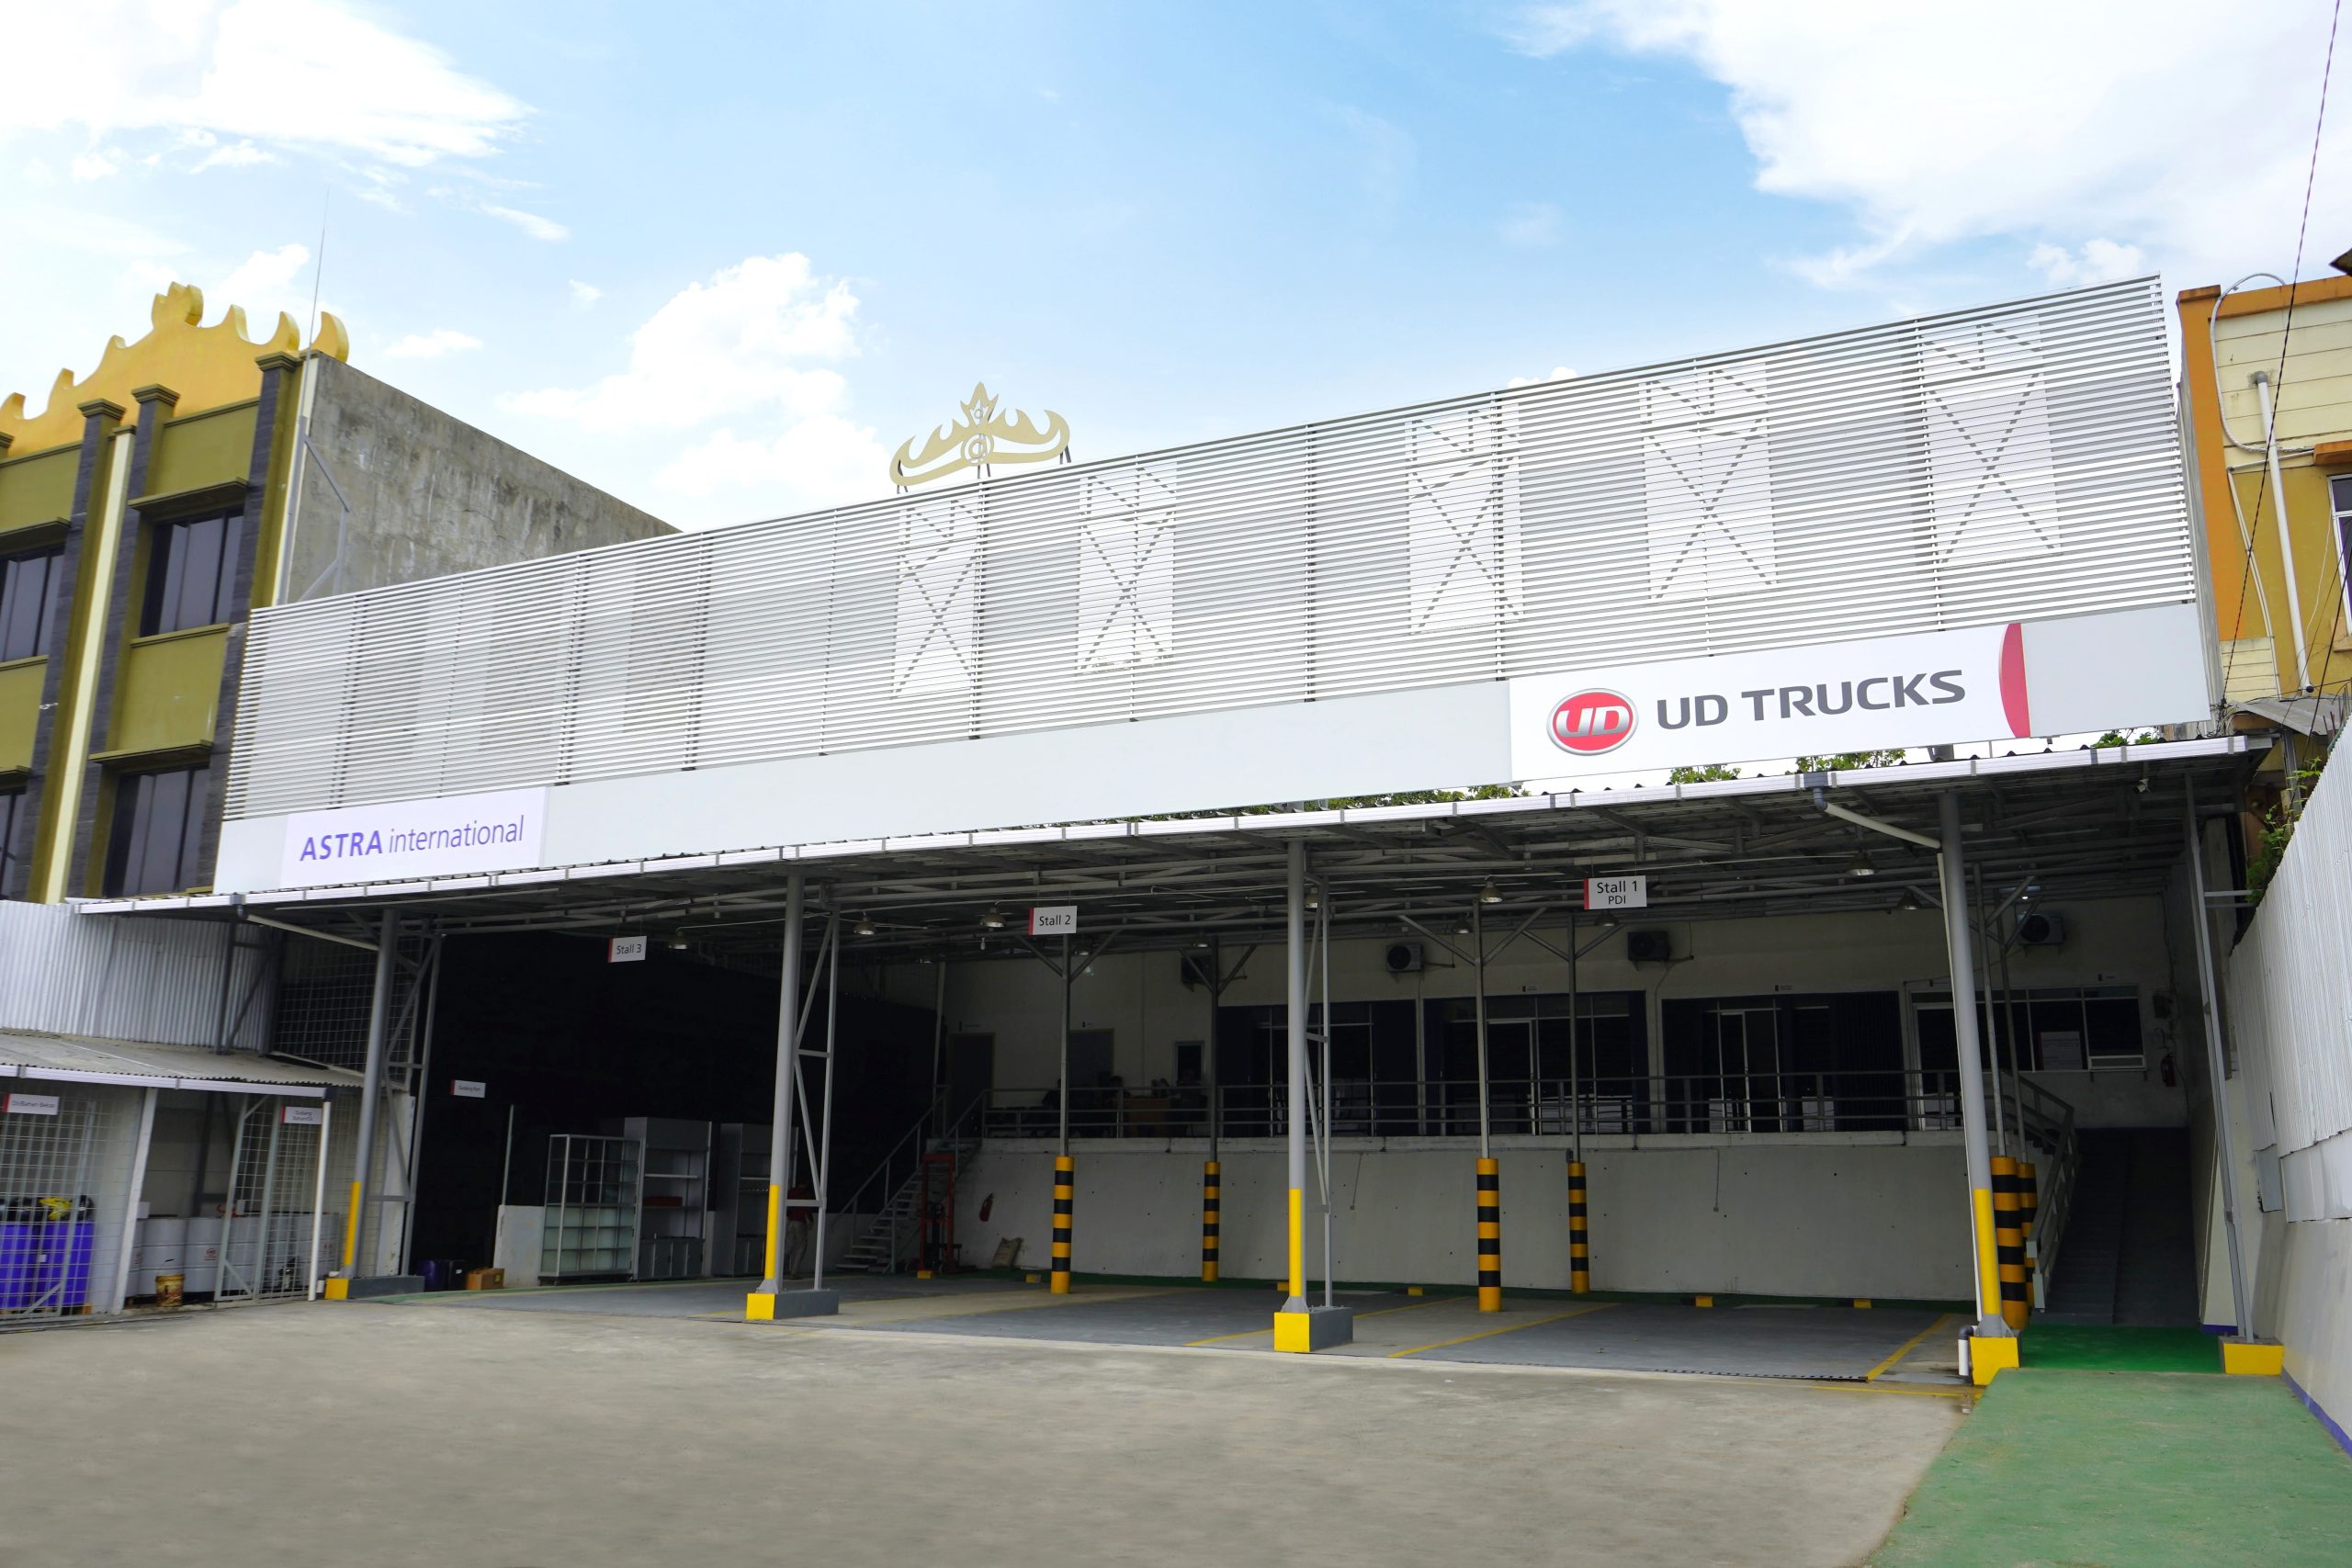 Perluas Layanan Total Solusi Optimal, Astra UD Trucks Lampung Resmi Berpindah Lokasi Baru